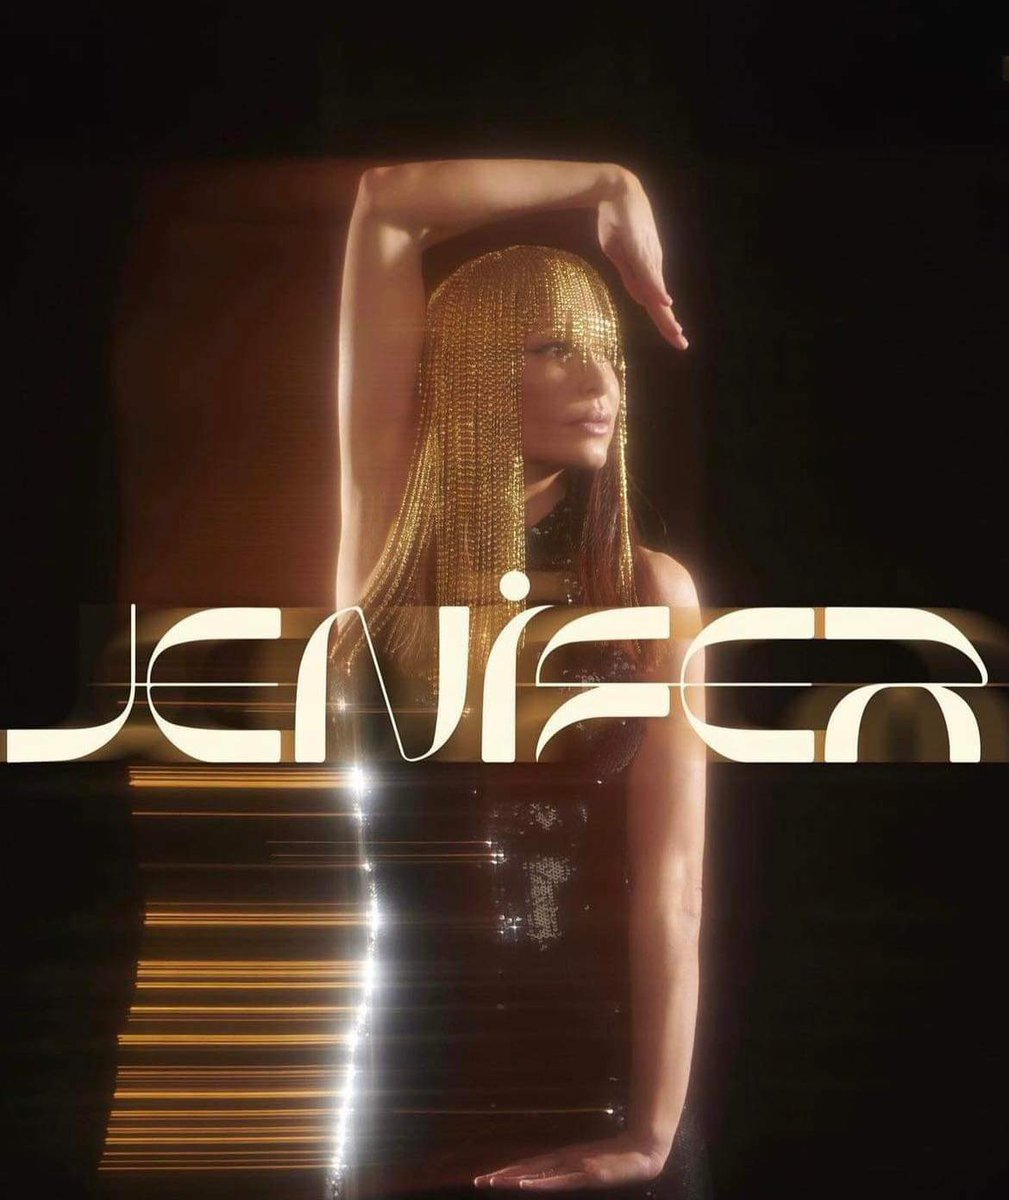 N9 fête aujourd’hui ses 1 ans 🥳
Le 4 novembre 2022 Jenifer sortait son 9e album intitulé #N9 
Votre chanson préférée de l’album 💋 @JeniferOfficiel 

#Jenifer #TeamJenifer #TheVoice #StarAcademy #album9 #J9 #Jenifer9